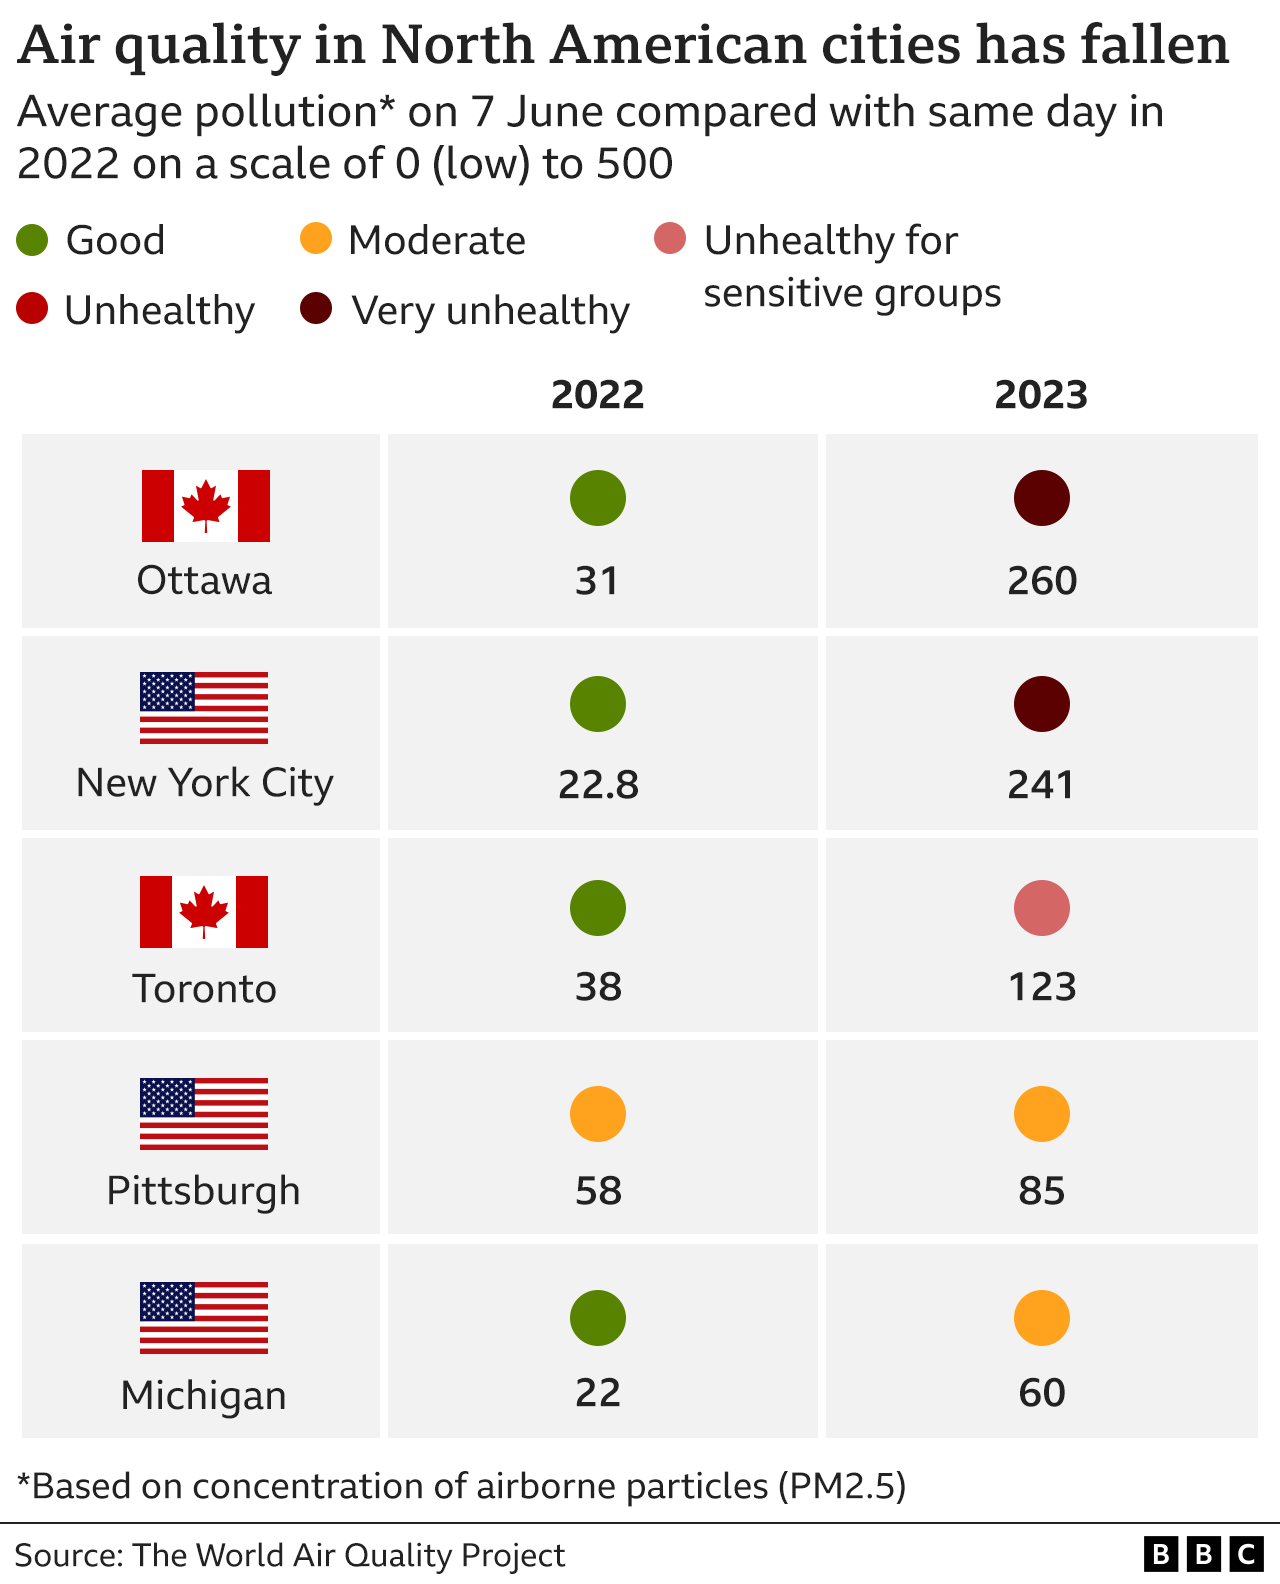 Tabelle, die zeigt, wie sich die durchschnittliche Luftqualität in fünf nordamerikanischen Städten am 7. Juni 2023 im Vergleich zum selben Tag im Jahr 2022 verschlechtert hat, wobei Ottawa und New York von gut auf sehr ungesund, Toronto für empfindliche Gruppen von gut auf ungesund, Pittsburgh auf mäßig und Michigan von gut auf mäßig gestiegen ist